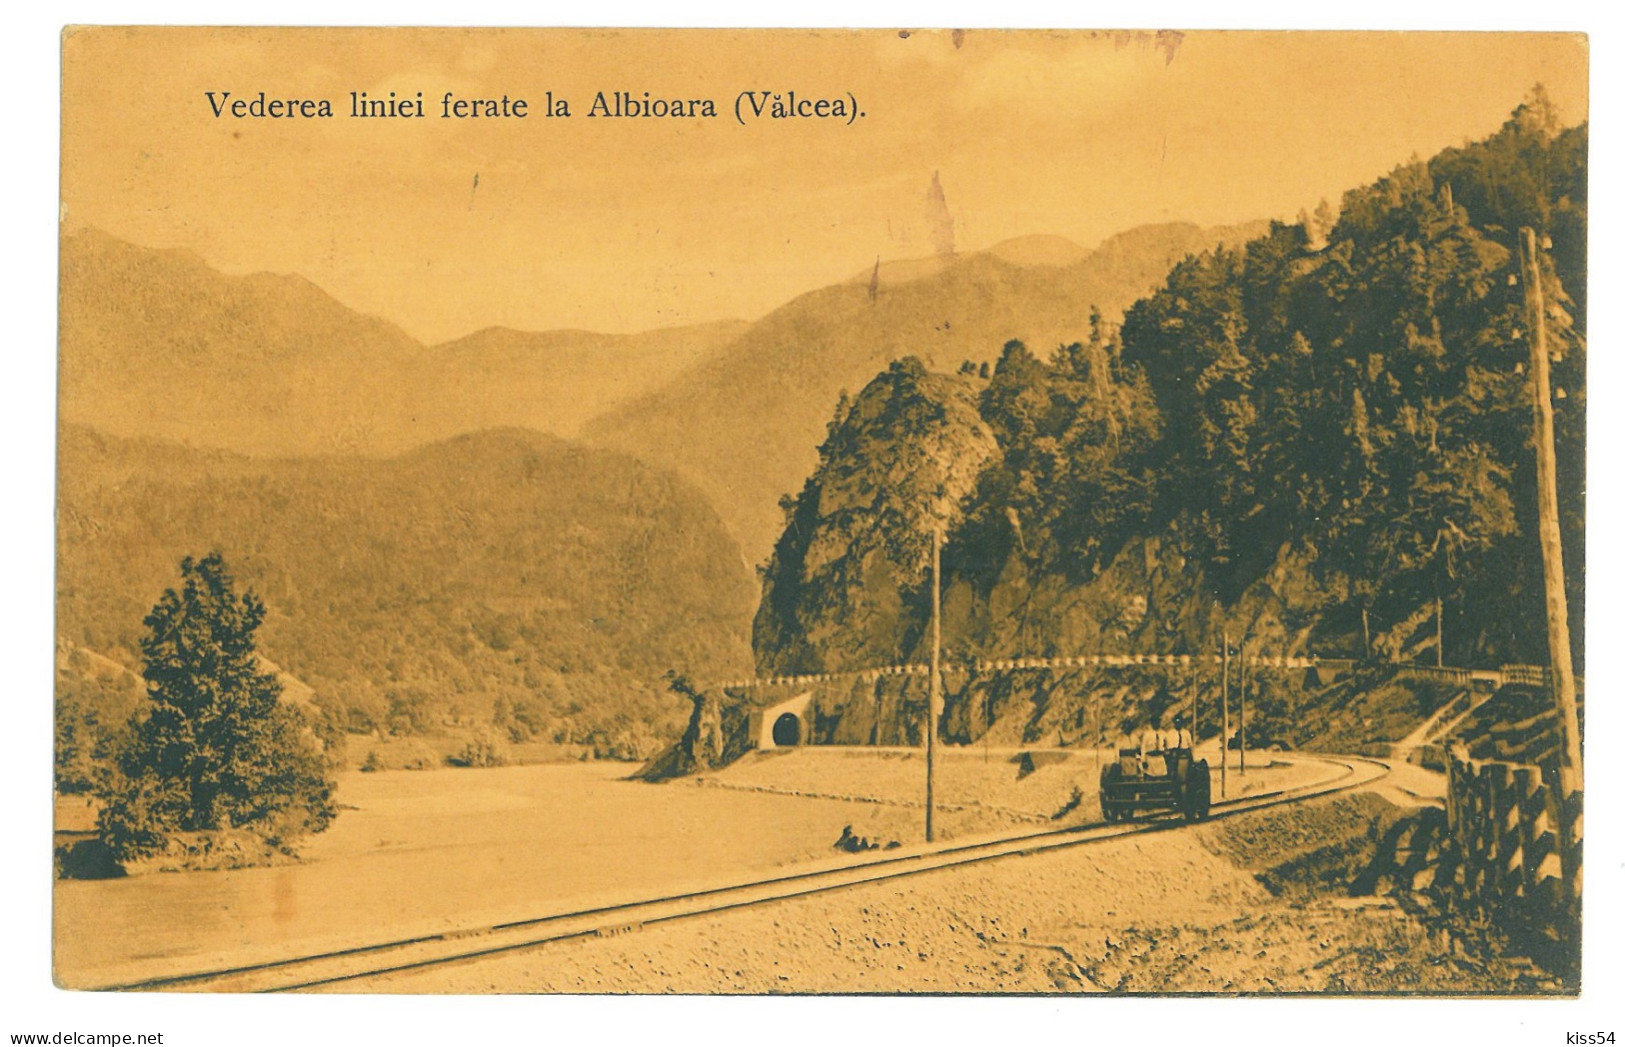 RO 40 - 22676 VALCEA, Valea Oltului, Drezina, Railway Tunnel, Romania - Old Postcard - Used - 1912 - Romania